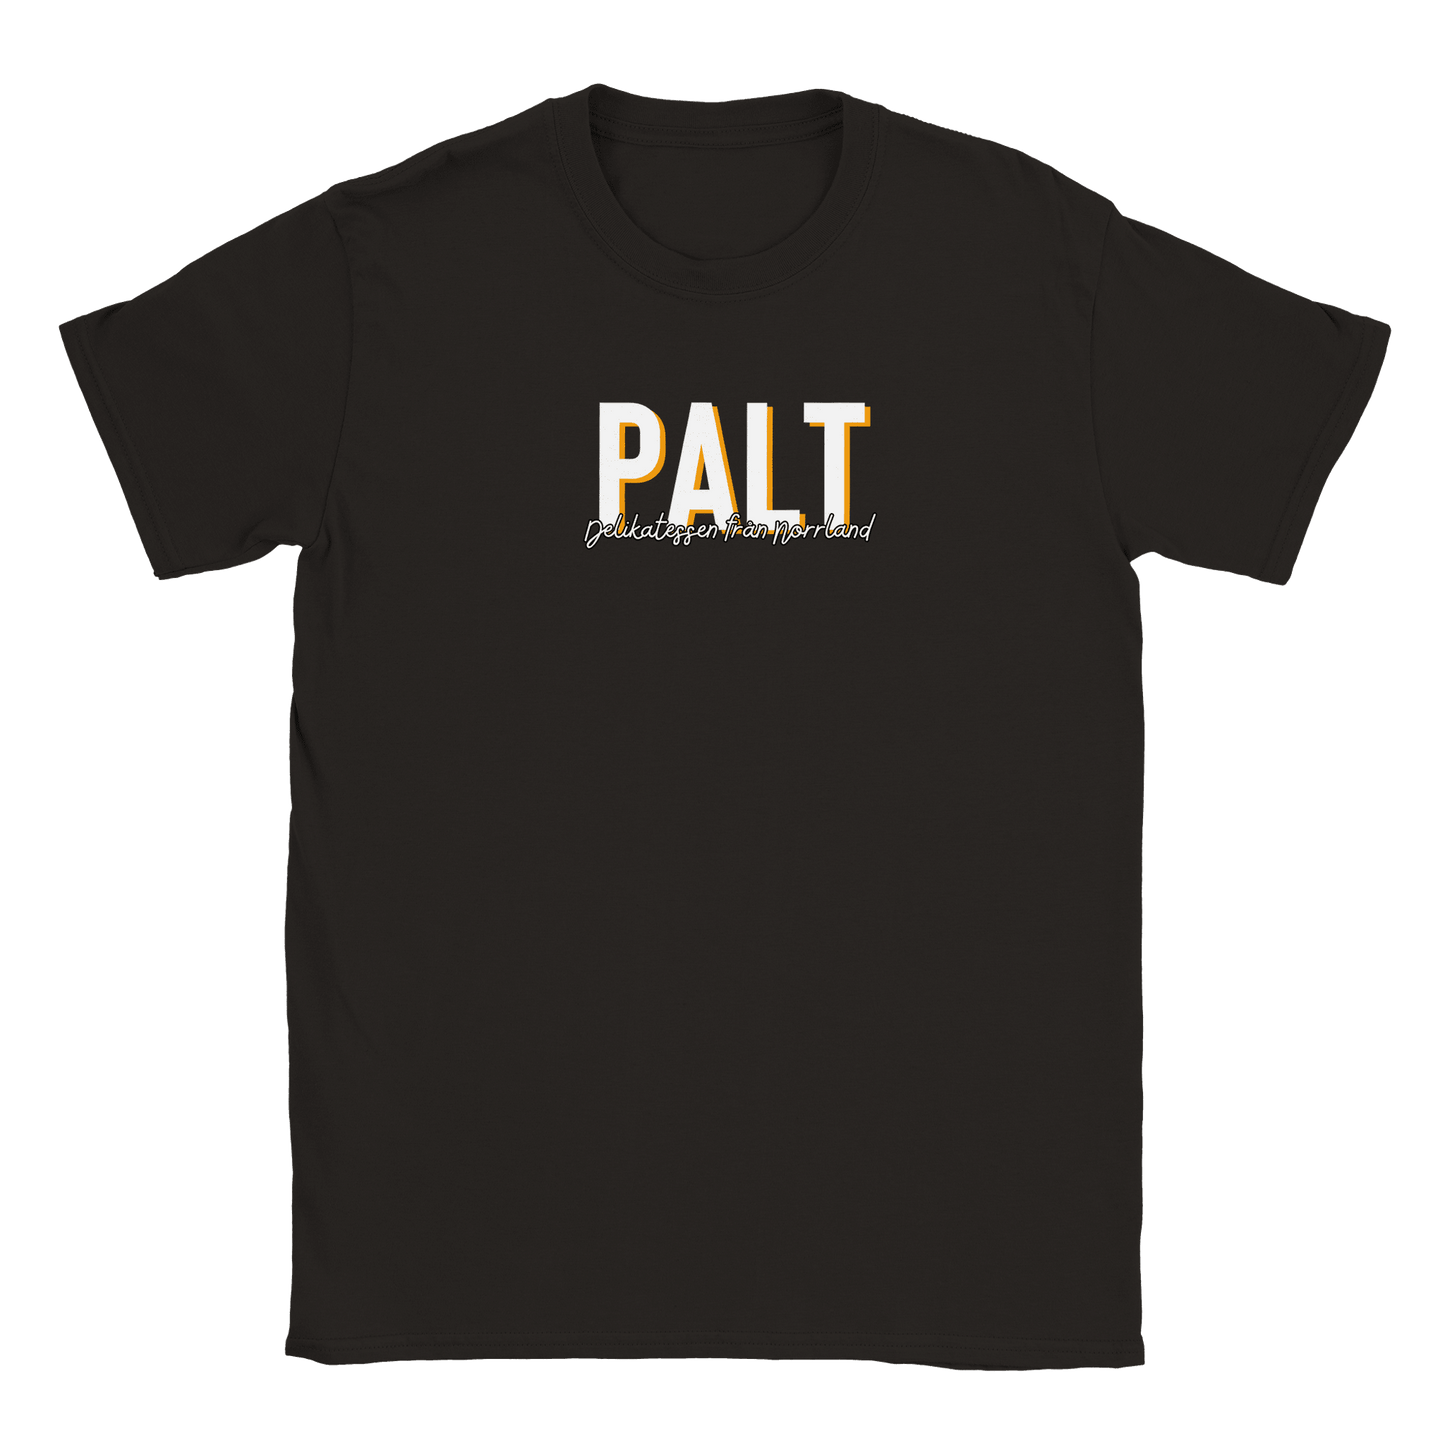 Palt - T-shirt Svart